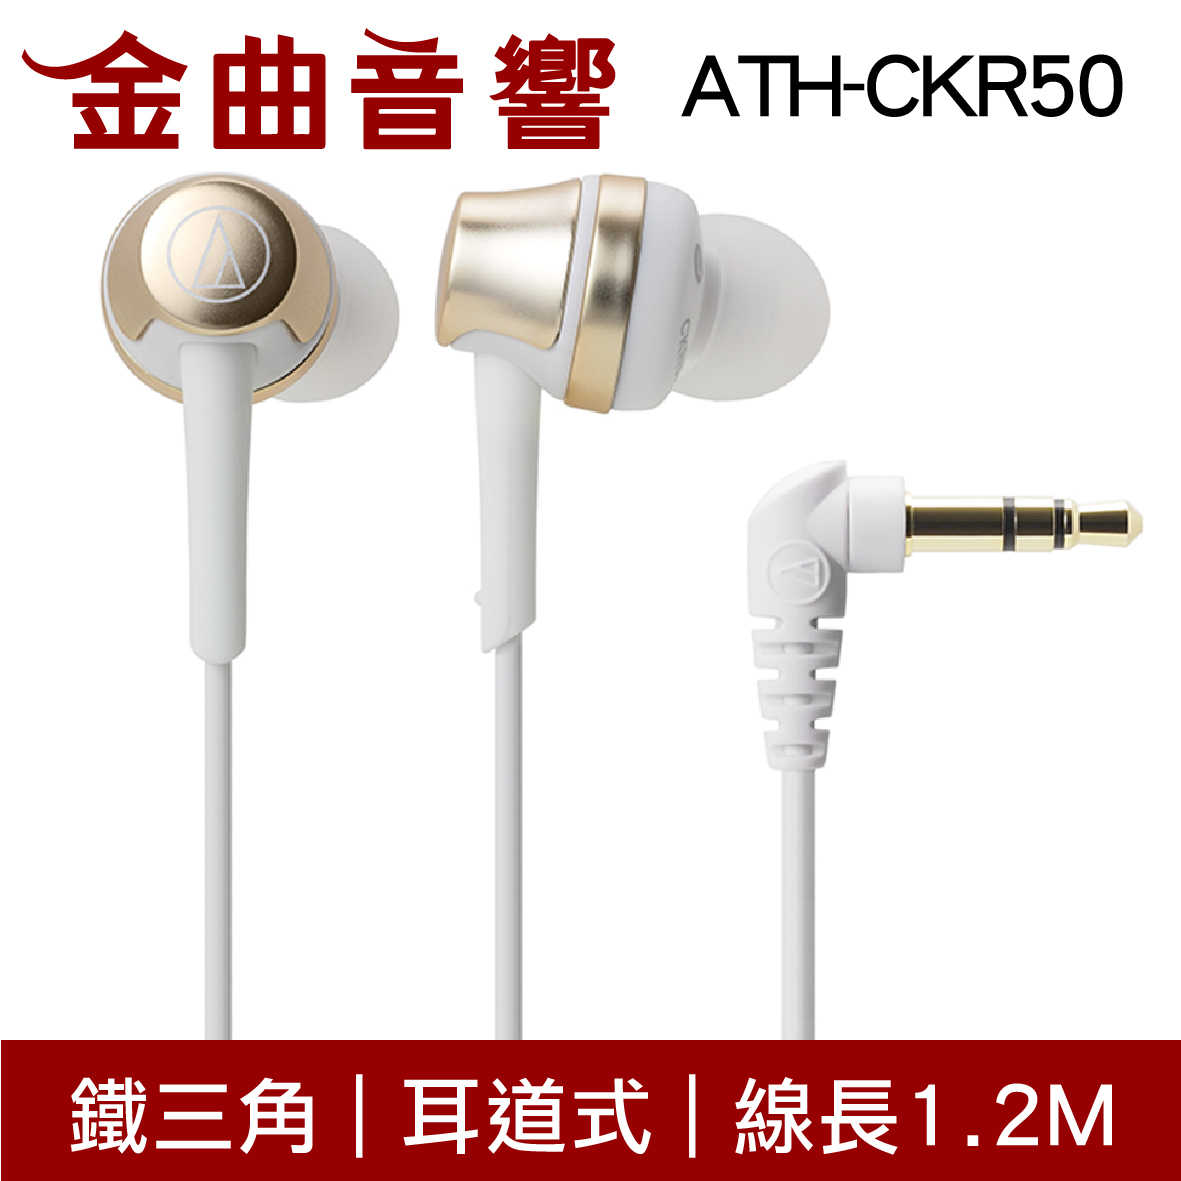 鐵三角 ATH-CKR50 黑色 耳道式耳機 | 金曲音響